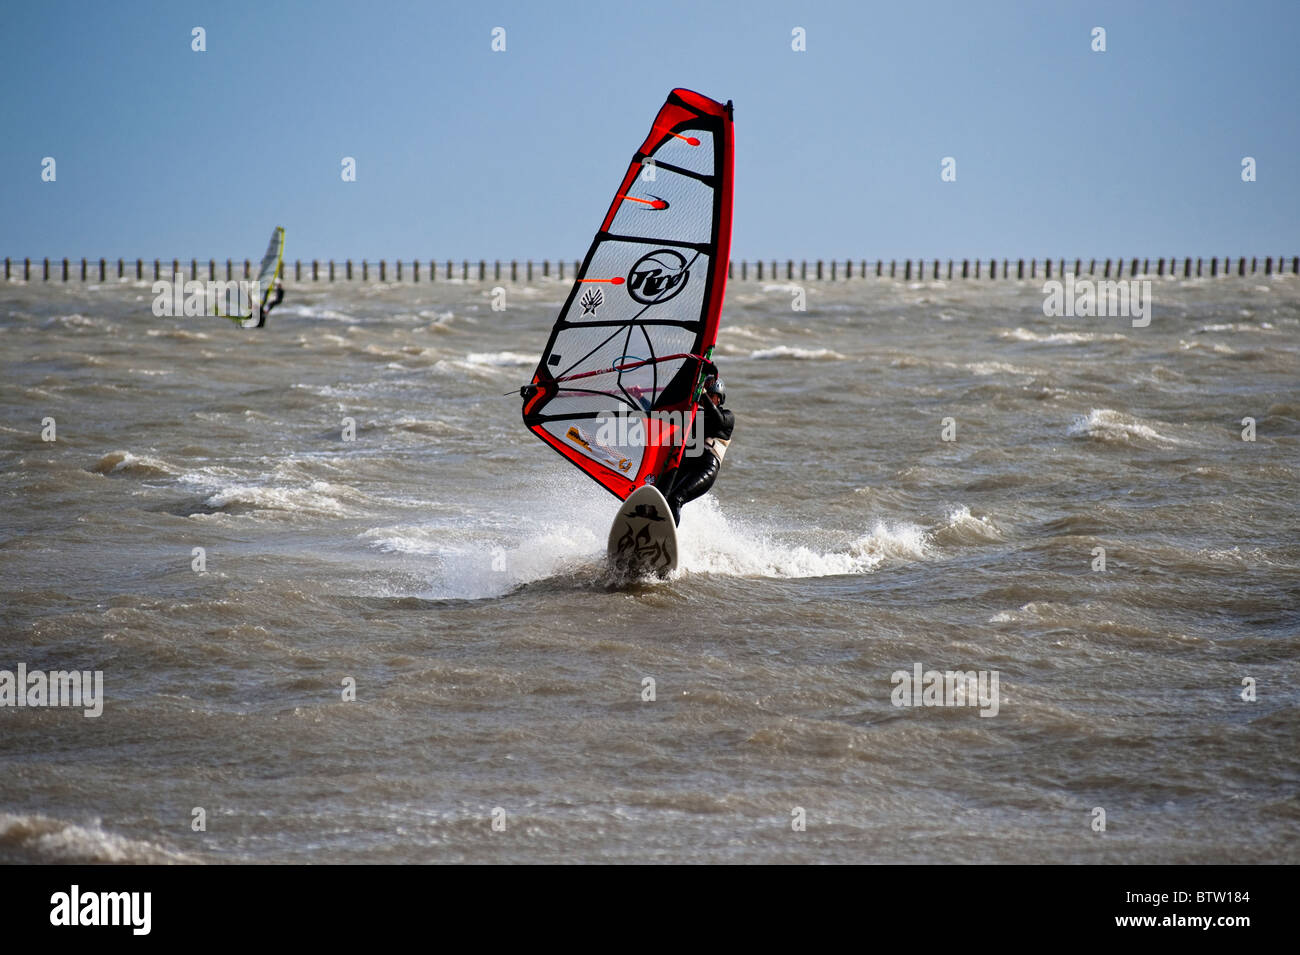 Windsurfer schöpft der starken Winde in der Themse-Mündung, Essex, England. Stockfoto